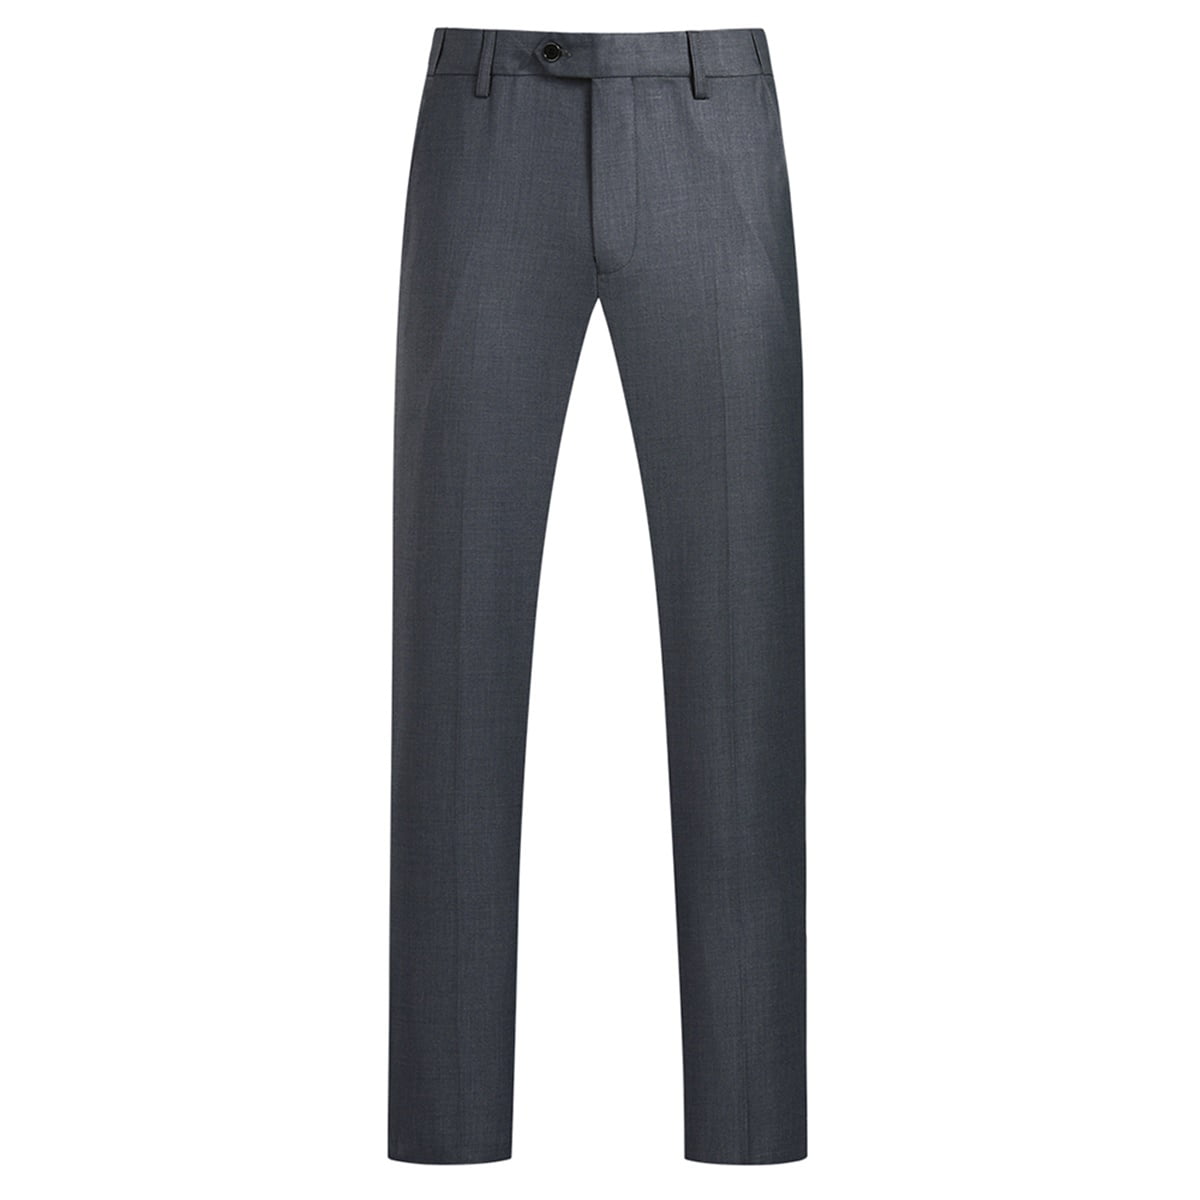 Cloudstyle Men's 2-Piece Suits Slim Fit 1 Button Dress Suit Jacket Blazer &  Pants Set 